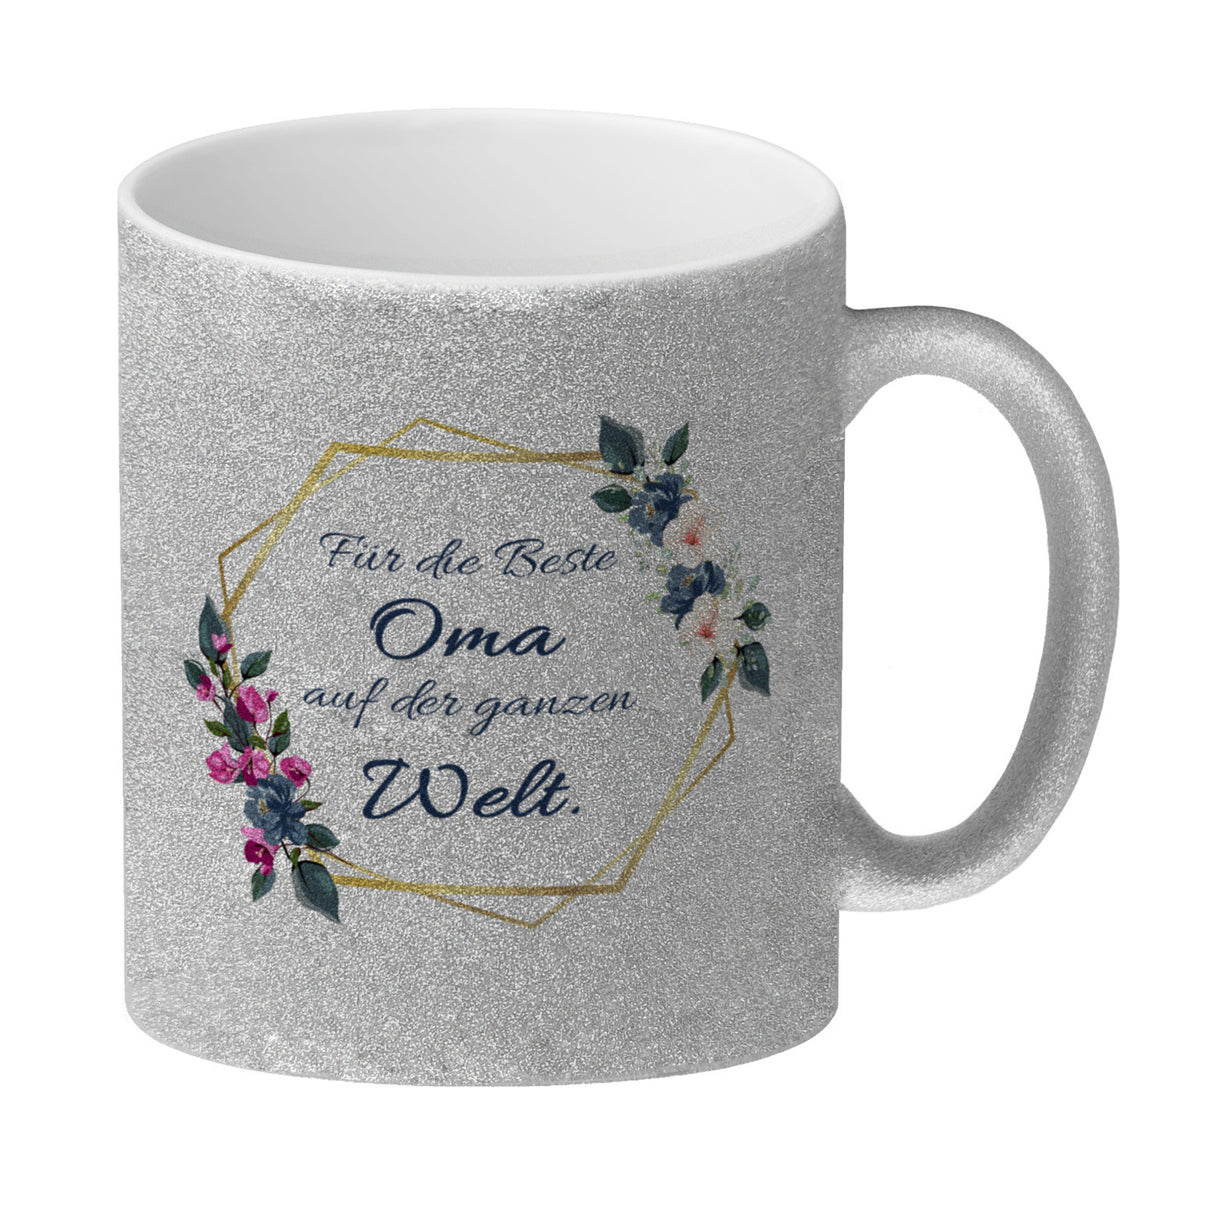 Für die Beste Oma auf der ganzen Welt Kaffeebecher mit Goldrahmen und Blumen